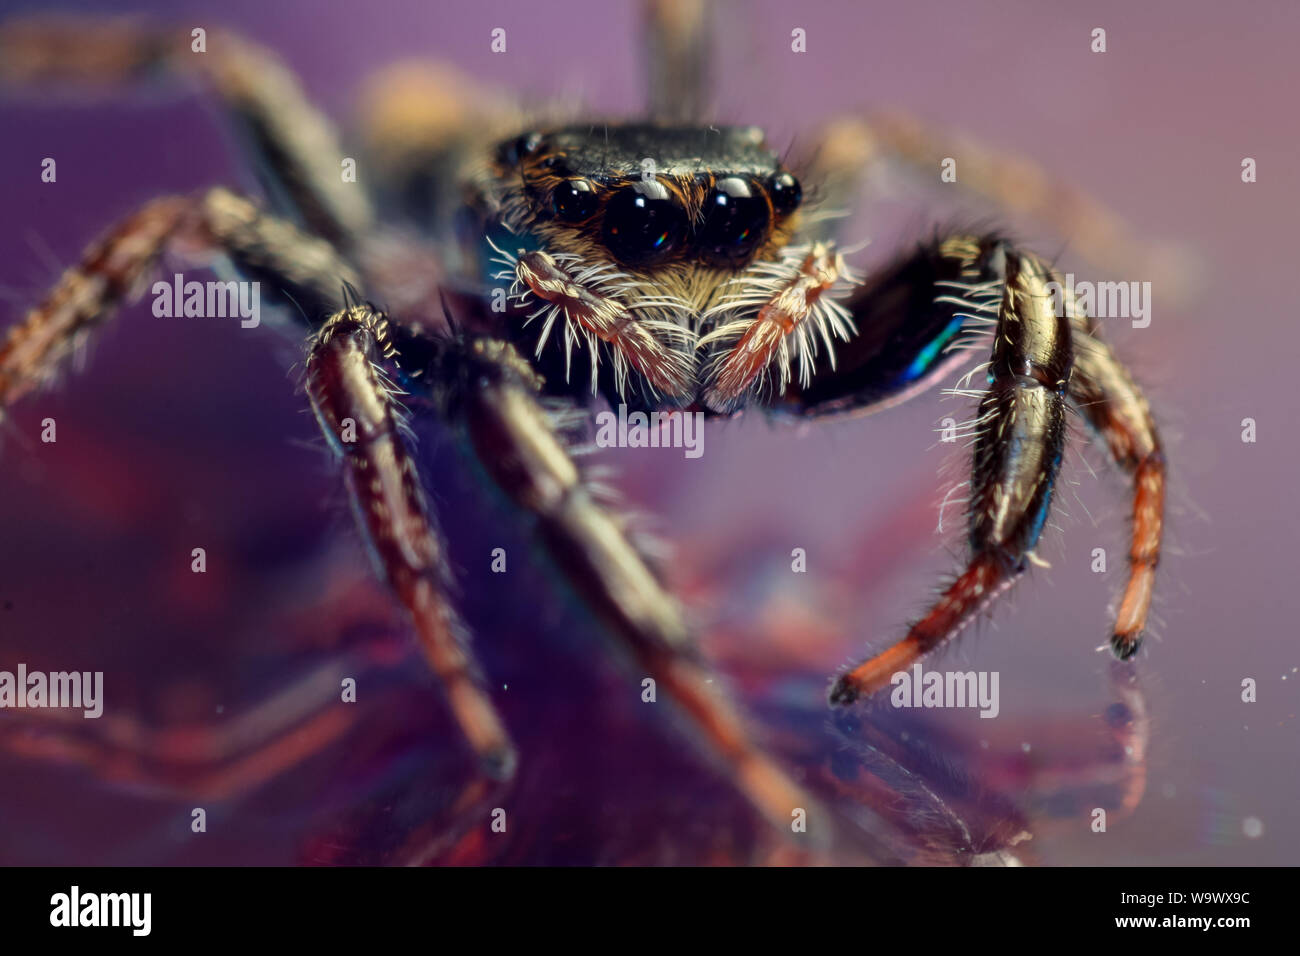 Un fort grossissement macro d'une araignée sauteuse mignonne avec de grands yeux sur un fond réfléchissant, spider détaillées close-up sur un miroir Banque D'Images